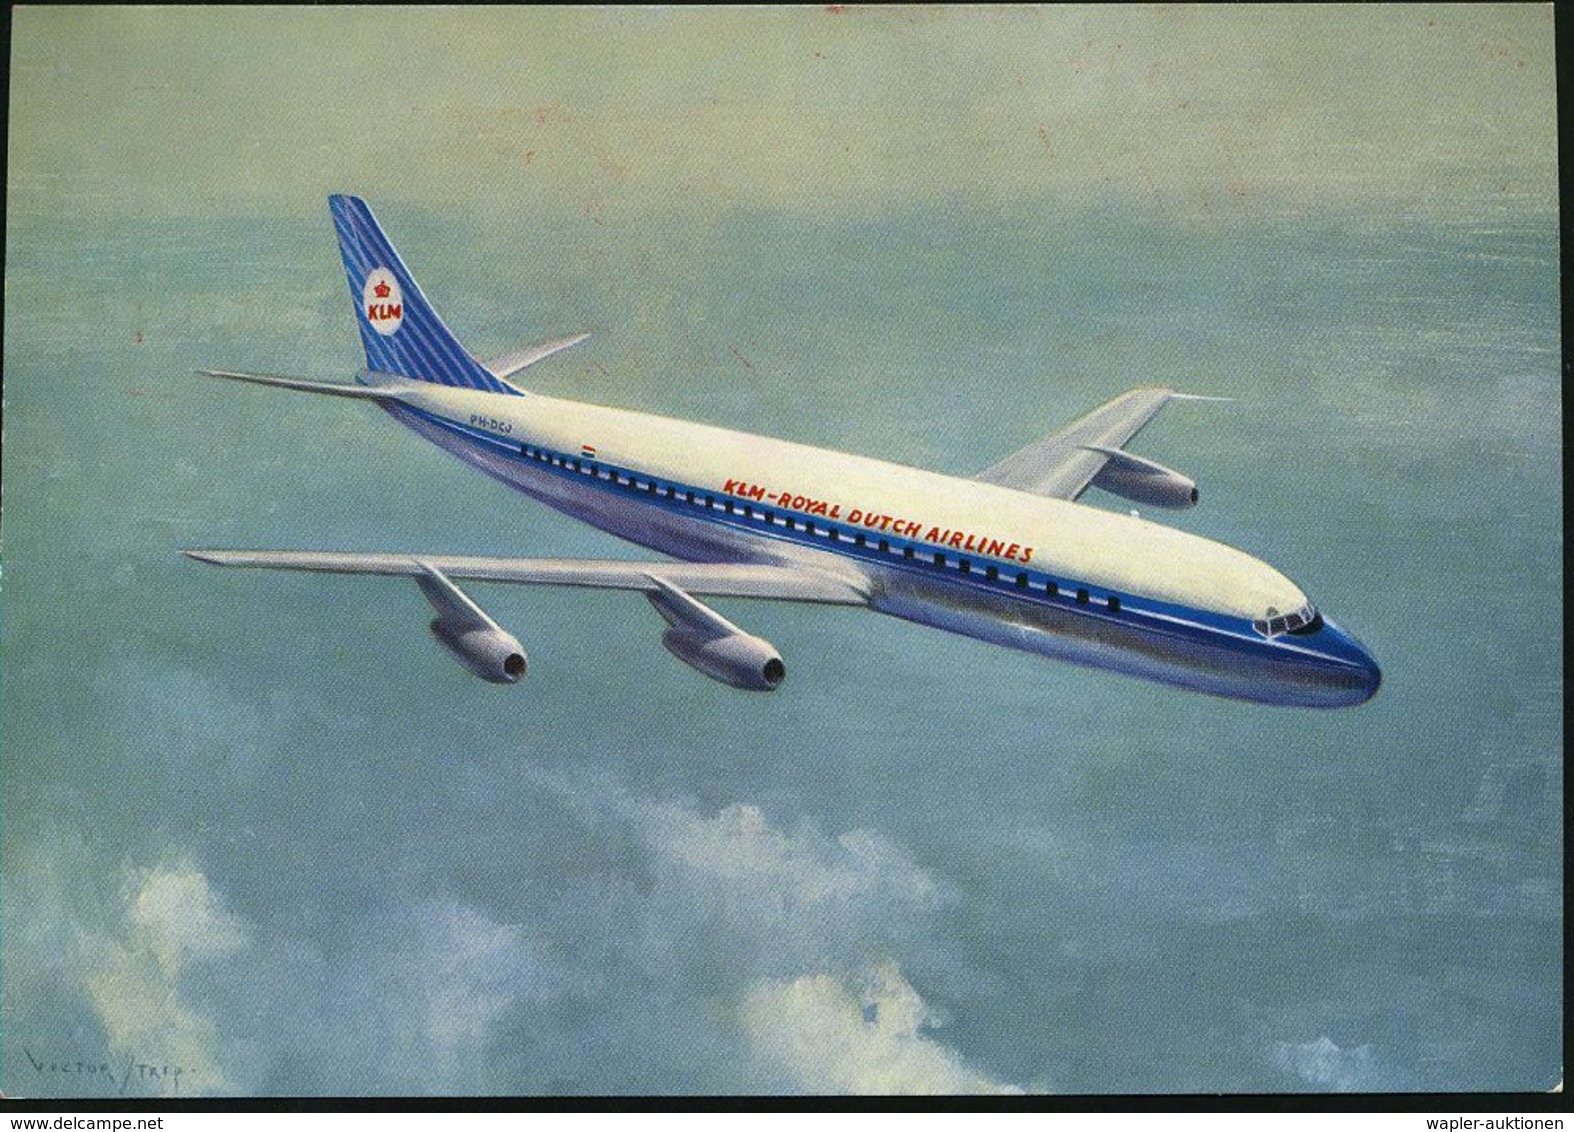 FLUGGESELLSCHAFTEN (OHNE DEUTSCHLAND) : (16) FRANKFURT (MAIN) 9/ KLM/ 40/ JAHRE/ 1919-/ 1959 1959 (8.1.) Seltener Jubil. - Autres (Air)